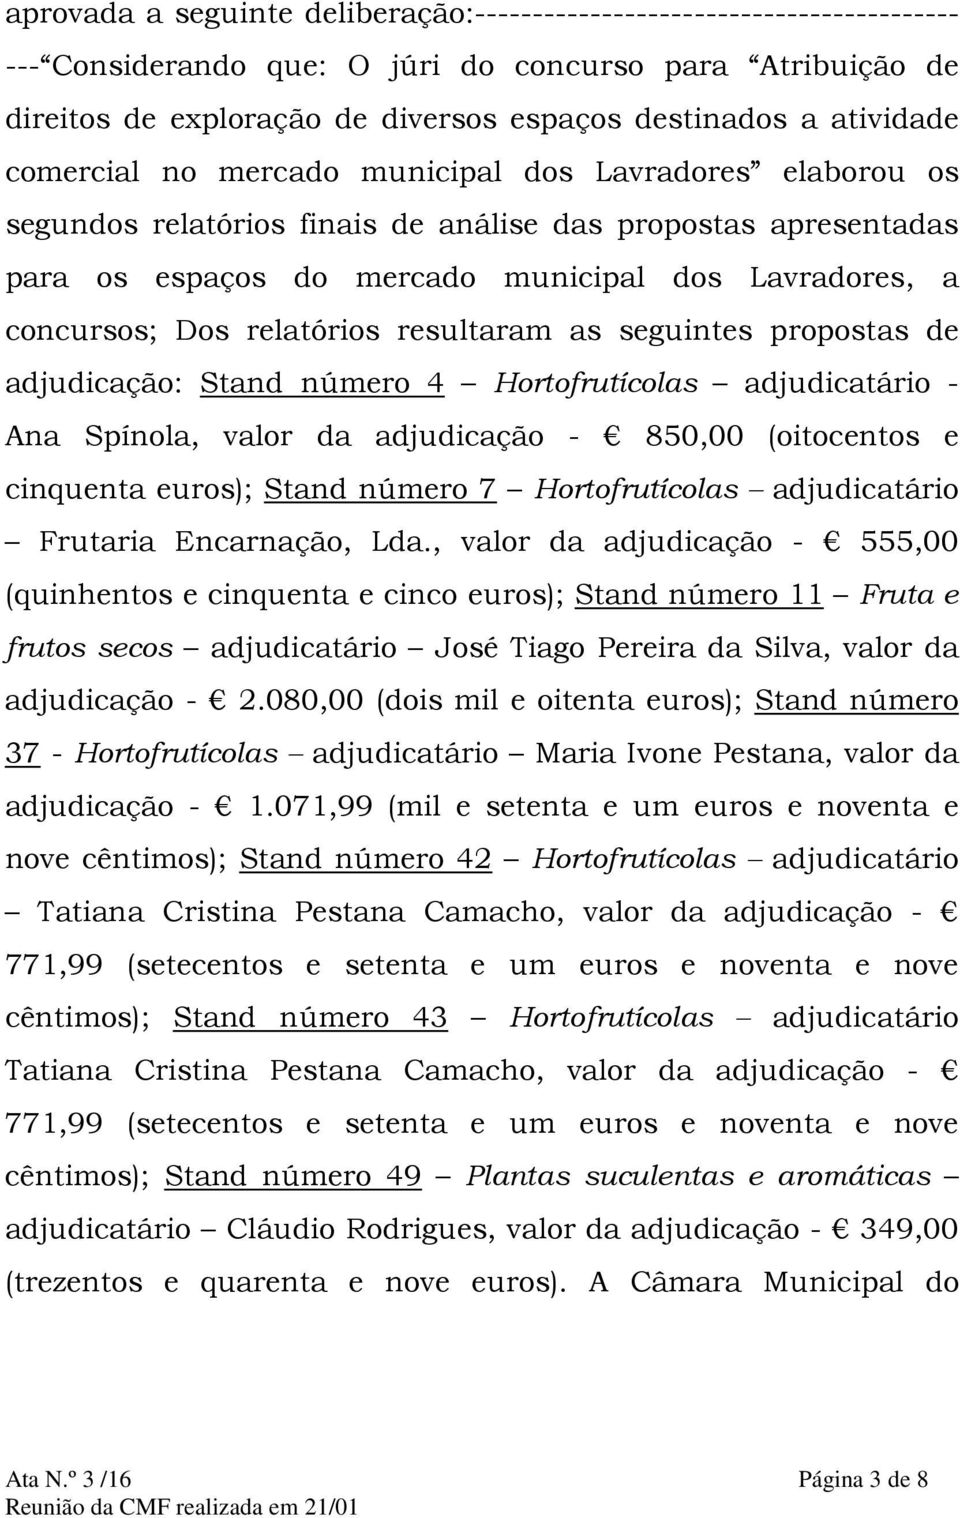 Dos relatórios resultaram as seguintes propostas de adjudicação: Stand número 4 Hortofrutícolas adjudicatário - Ana Spínola, valor da adjudicação - 850,00 (oitocentos e cinquenta euros); Stand número